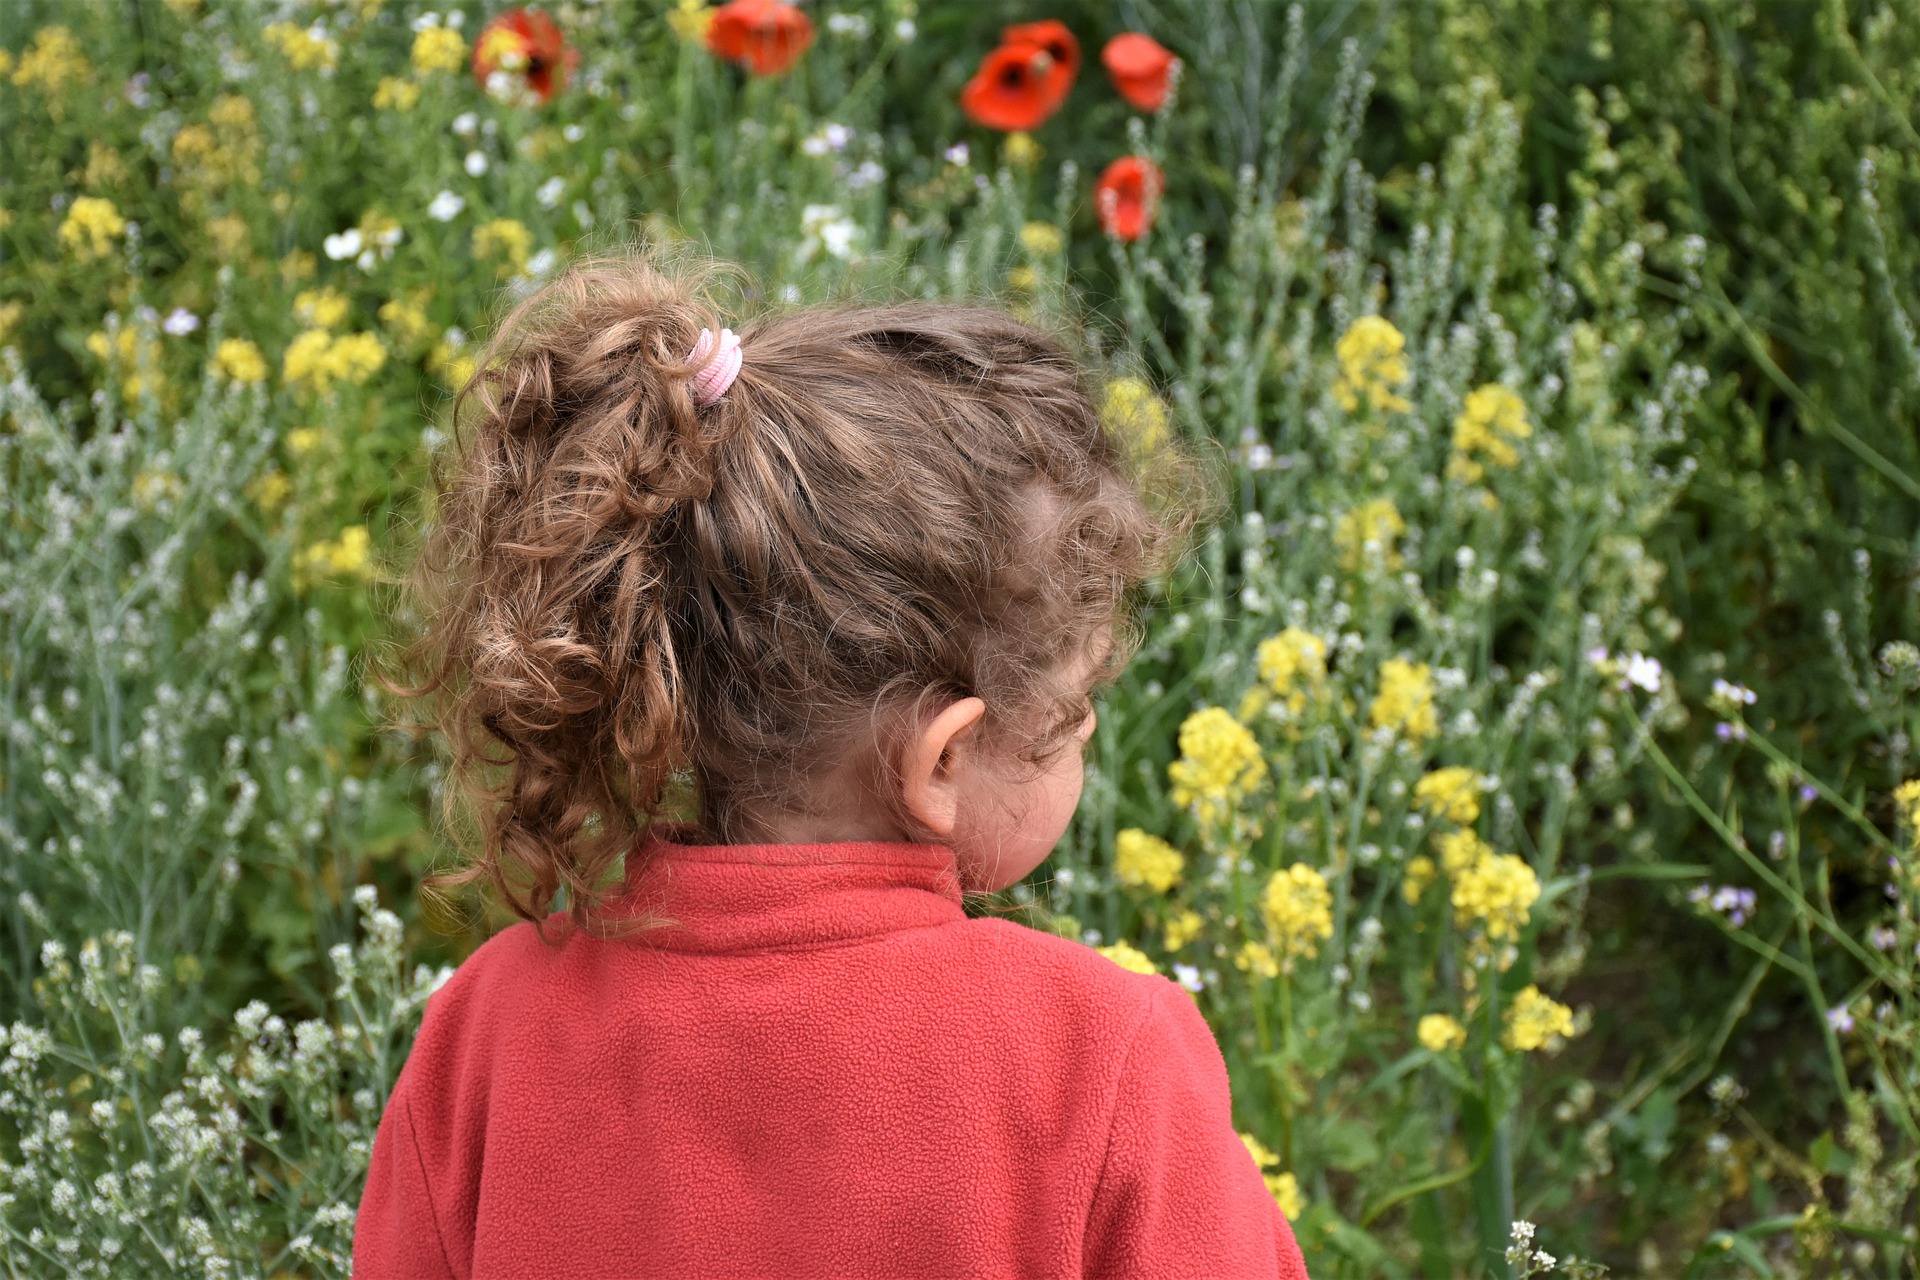 Foto: Kinderoberkörper vor Blumenwiese